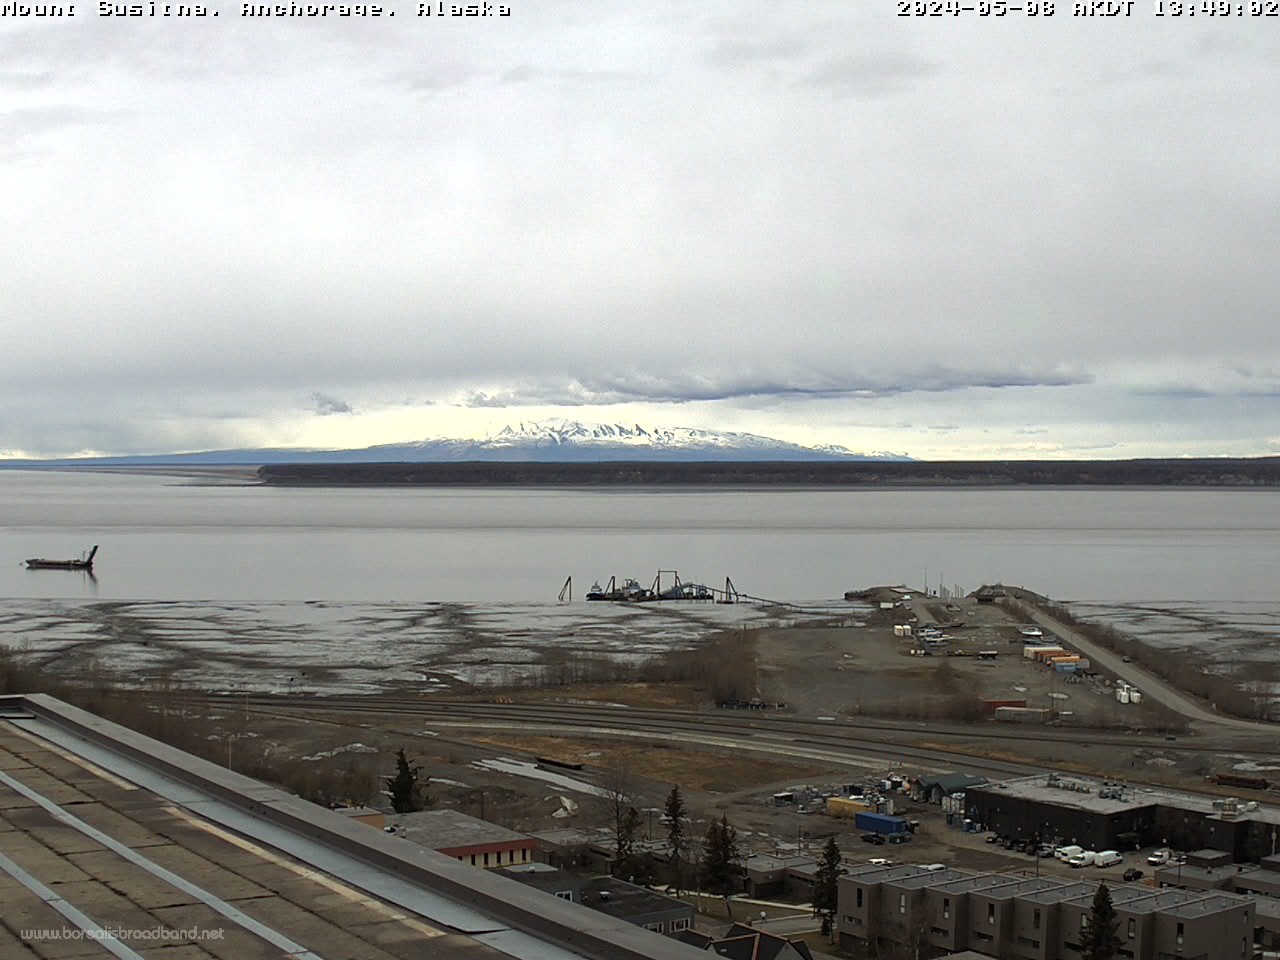 Mount Susitna, Alaska Thu. 13:49